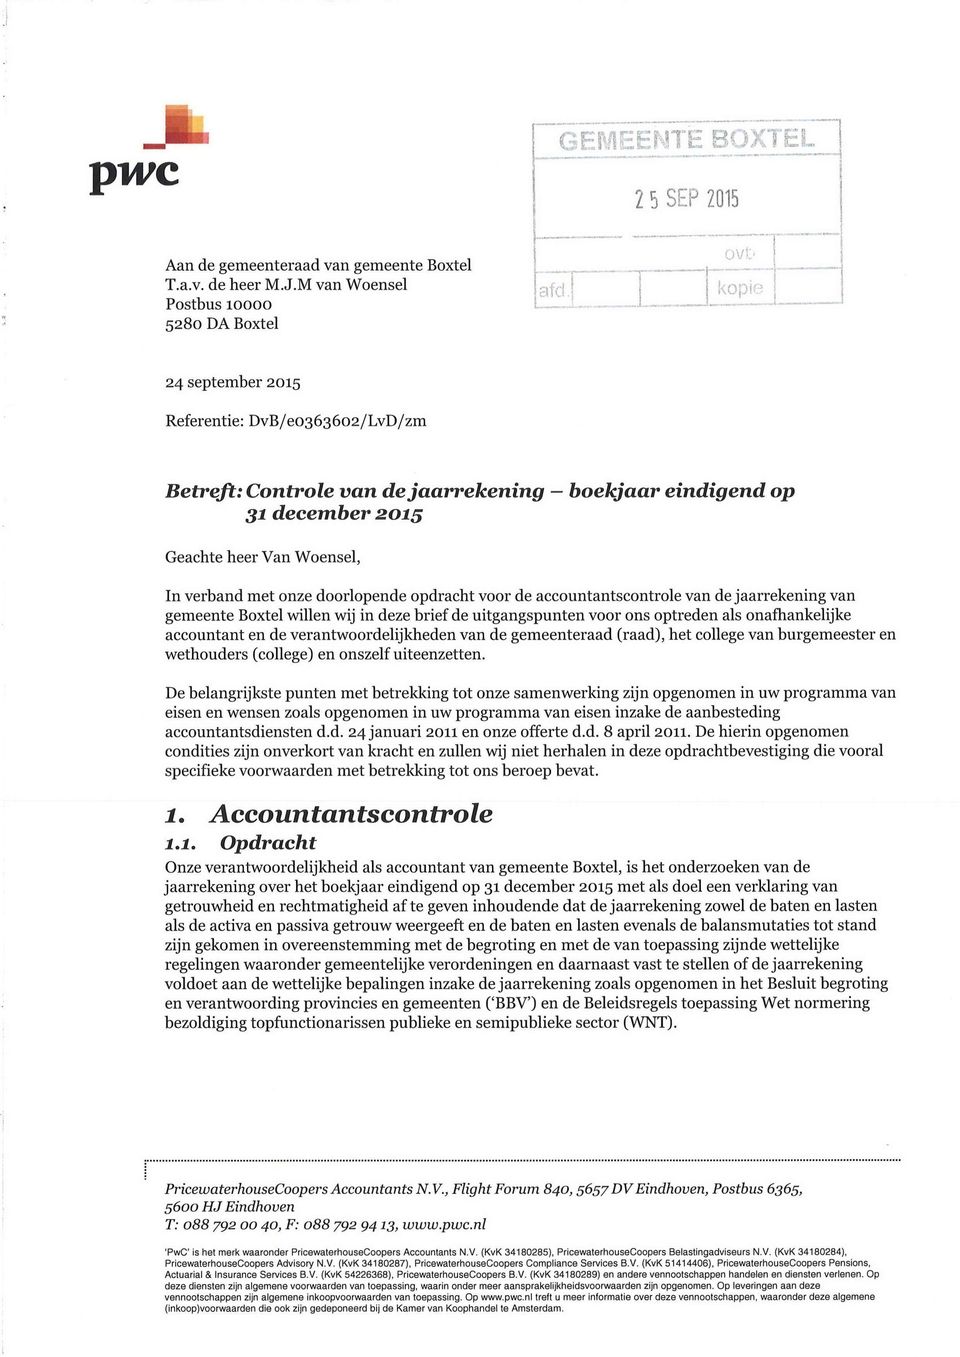 verband met onze doorlopende opdracht voor de accountantscontrole van de jaarrekening van gemeente Boxtel willen wij in deze brief de uitgangspunten voor ons optreden als onafhankelijke accountant en